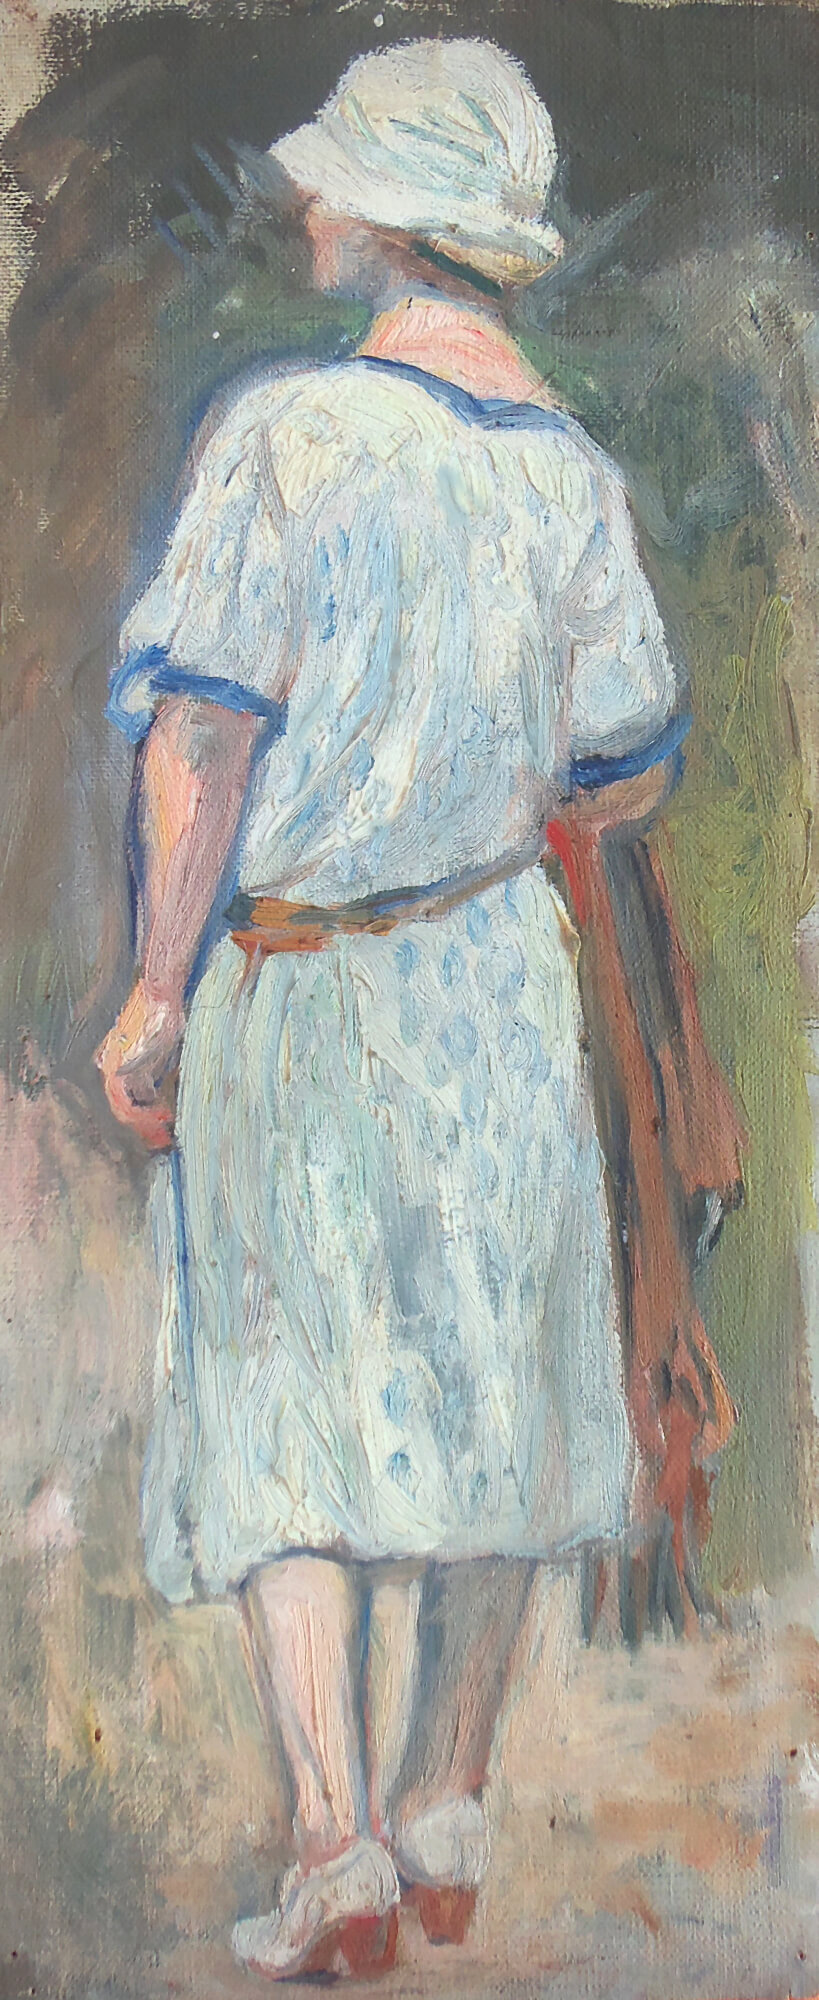 Dernier portrait de la série d'huiles sur toile représentant Jeanne L'Enfant. Chapeau blanc et ceinture marron cette fois. Le foulard aurait-il disparu?